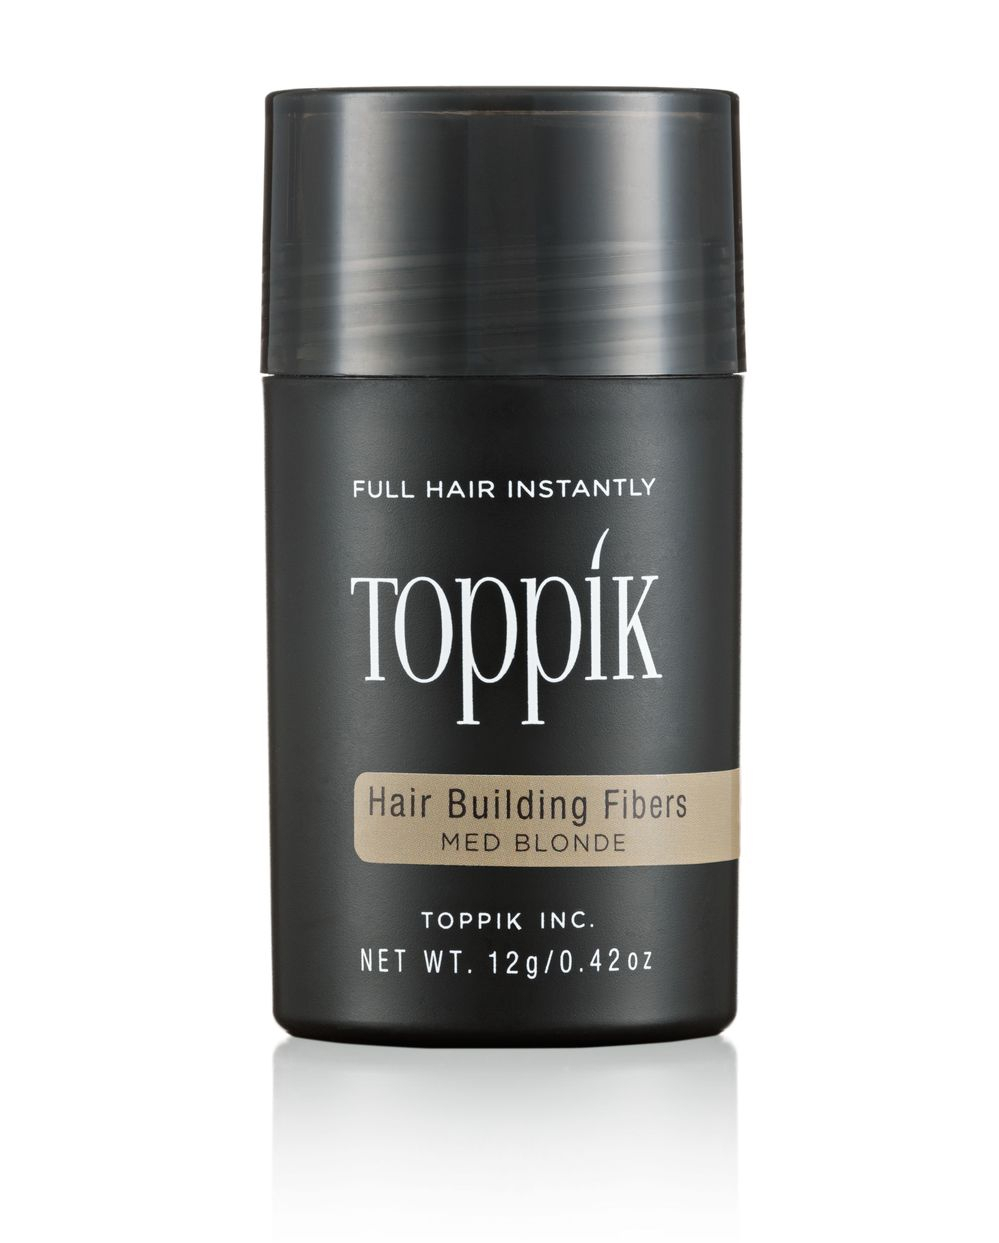 Камуфляж для волос (Hair Building Fibers) Toppik, для мужчин и женщин – Средний блонд